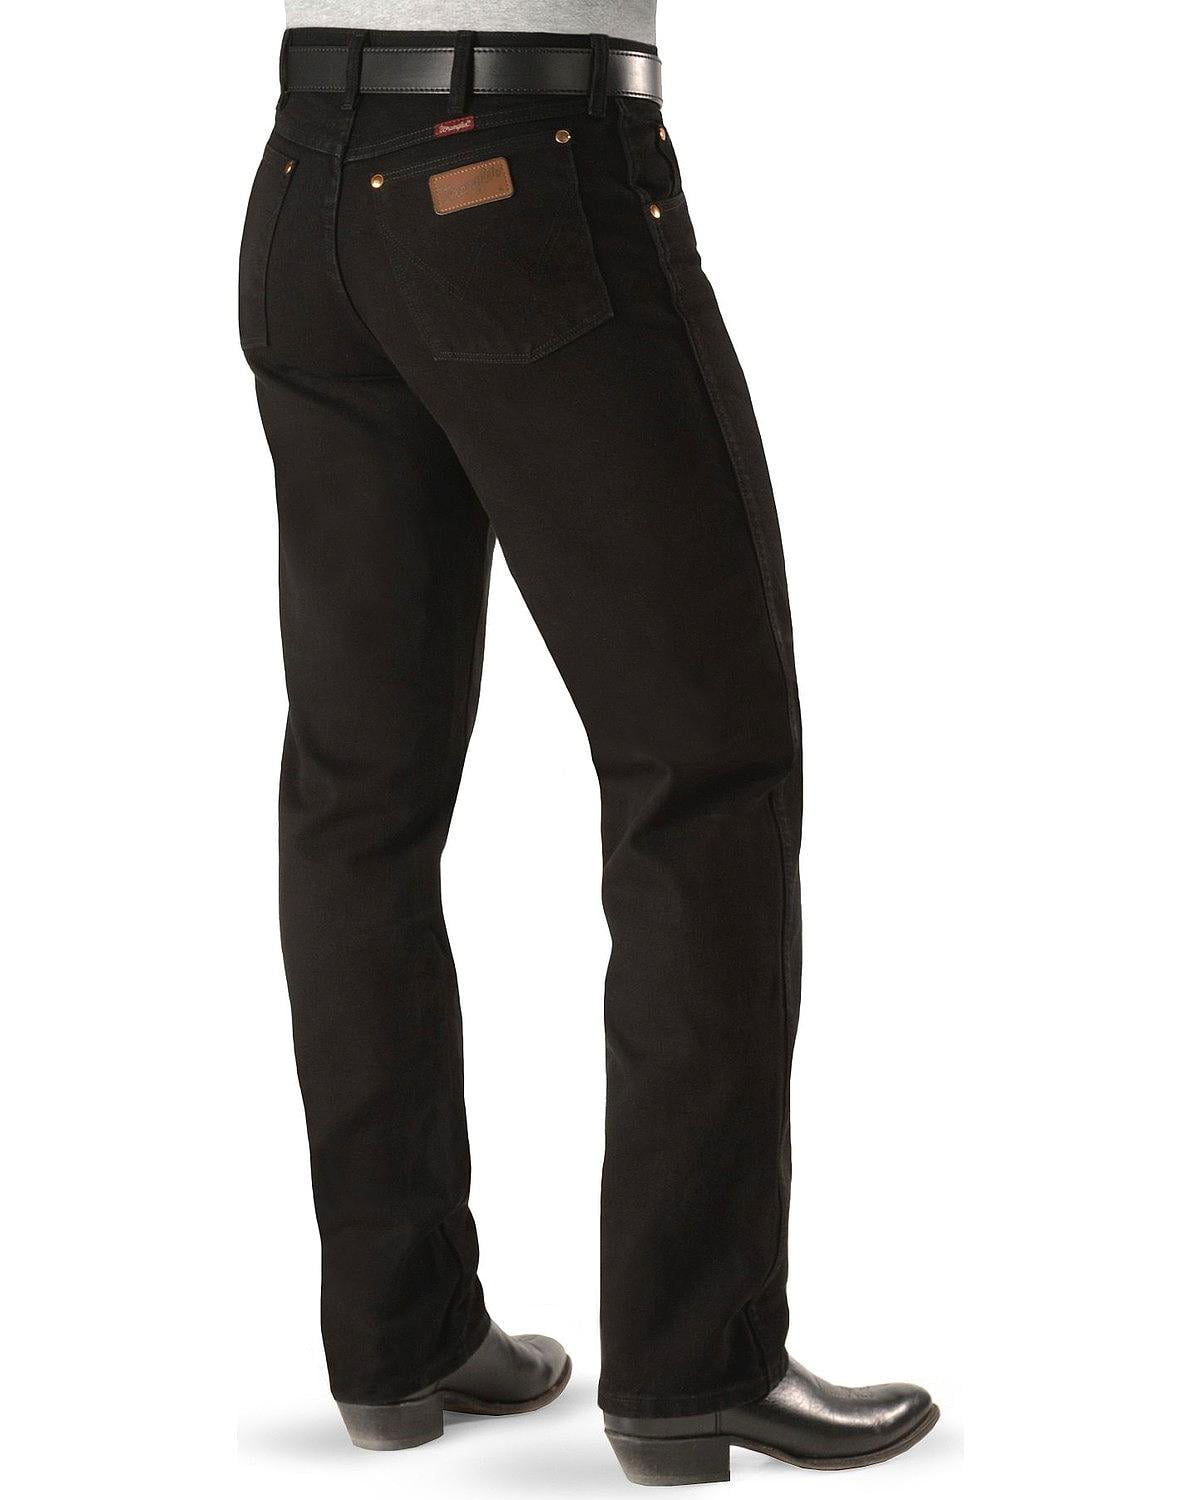 black wrangler jeans walmart